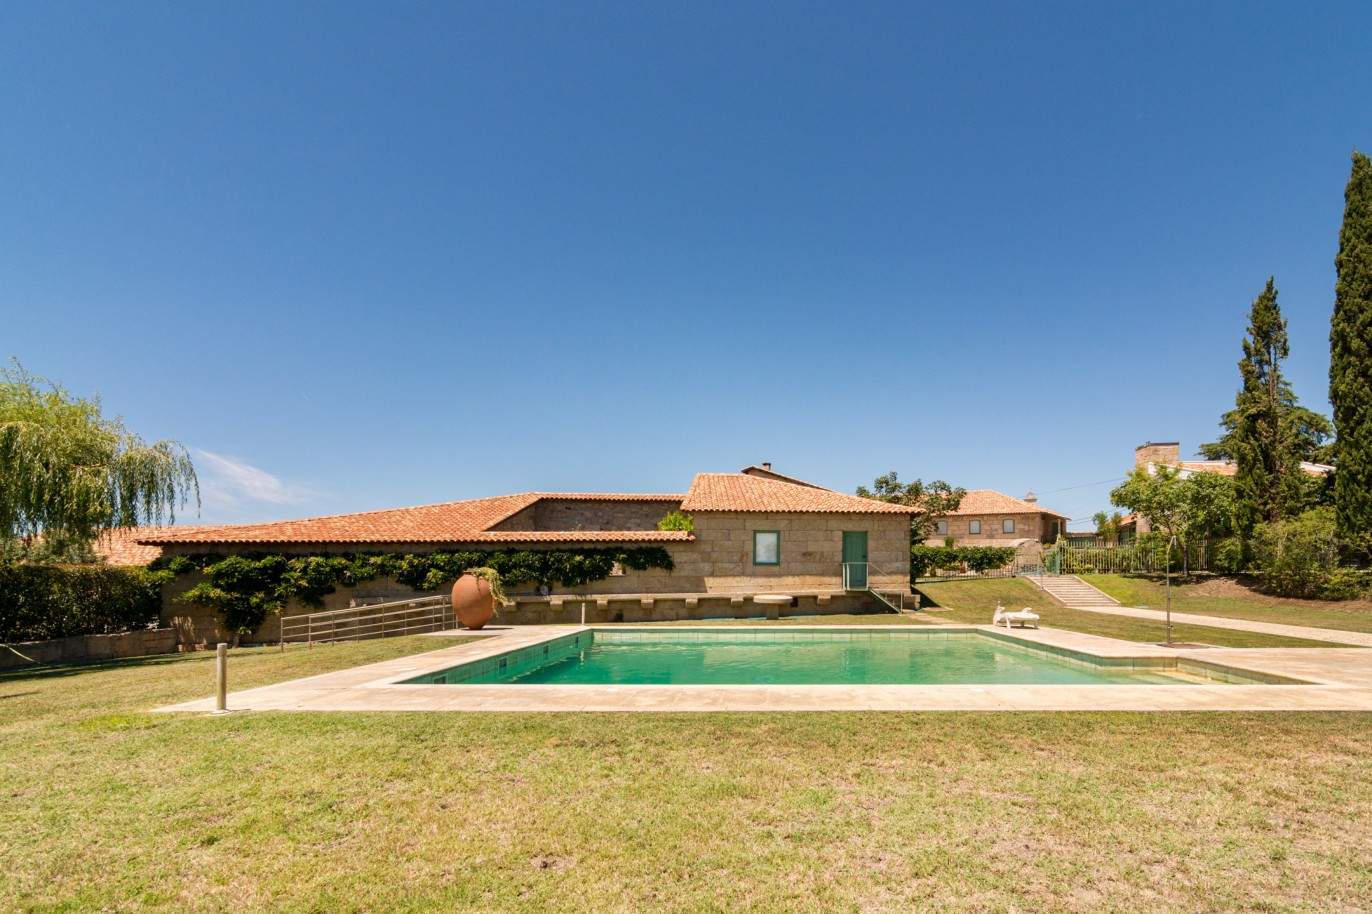 Venda: Propriedade secular com olival, capela, jardim e piscina, Mirandela, Norte de Portugal_204382